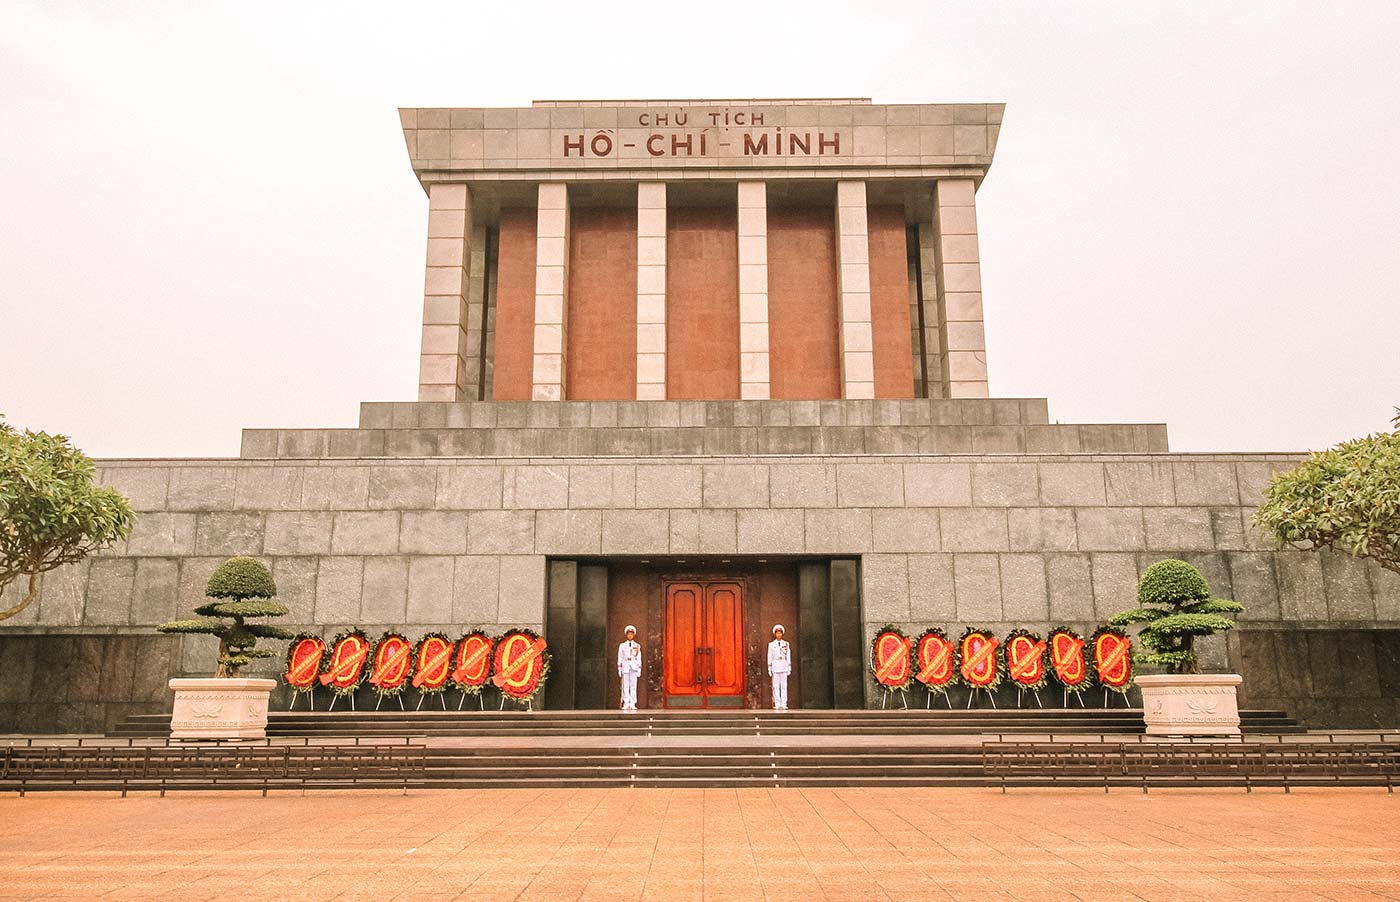 Ho Chi Minh's Mausoleum Hanoi